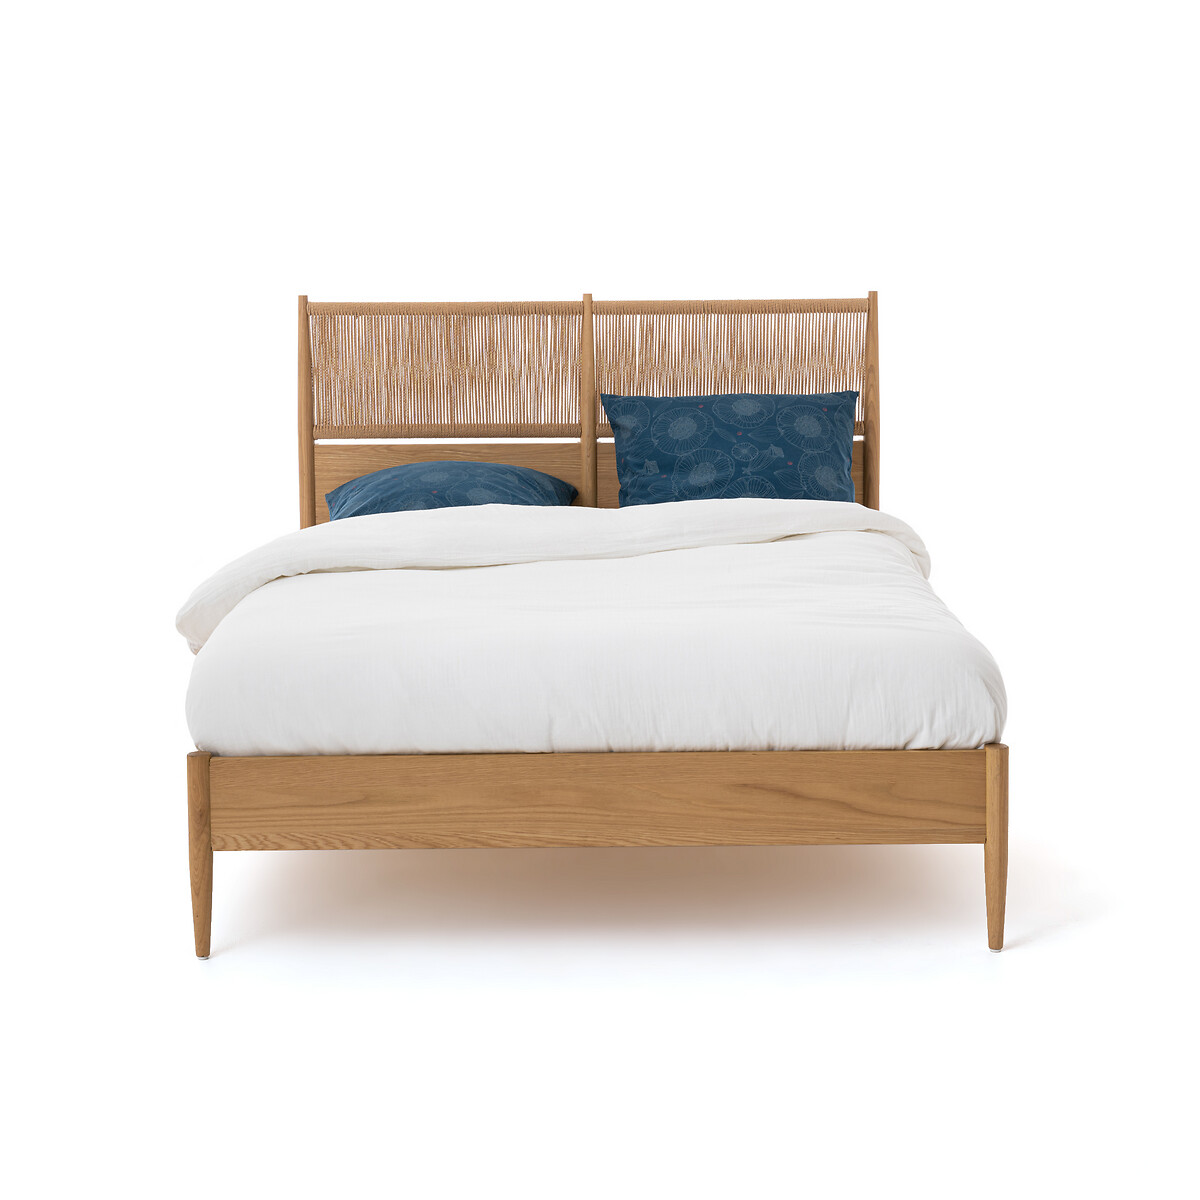 Кровать La Redoute С кроватным основанием Malora 160 x 200 см каштановый, размер 160 x 200 см - фото 2